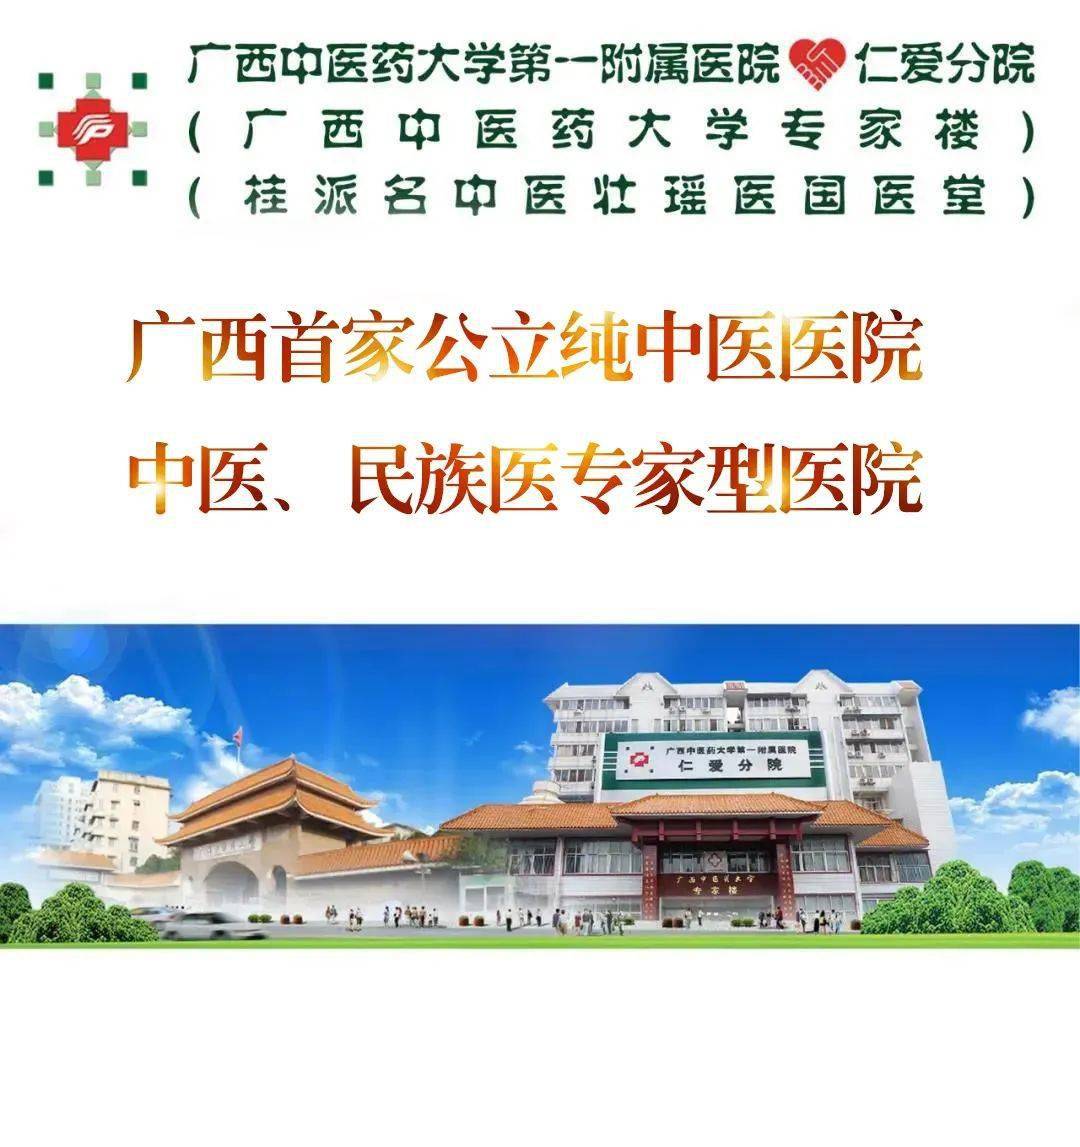 广西中医学院专家楼图片